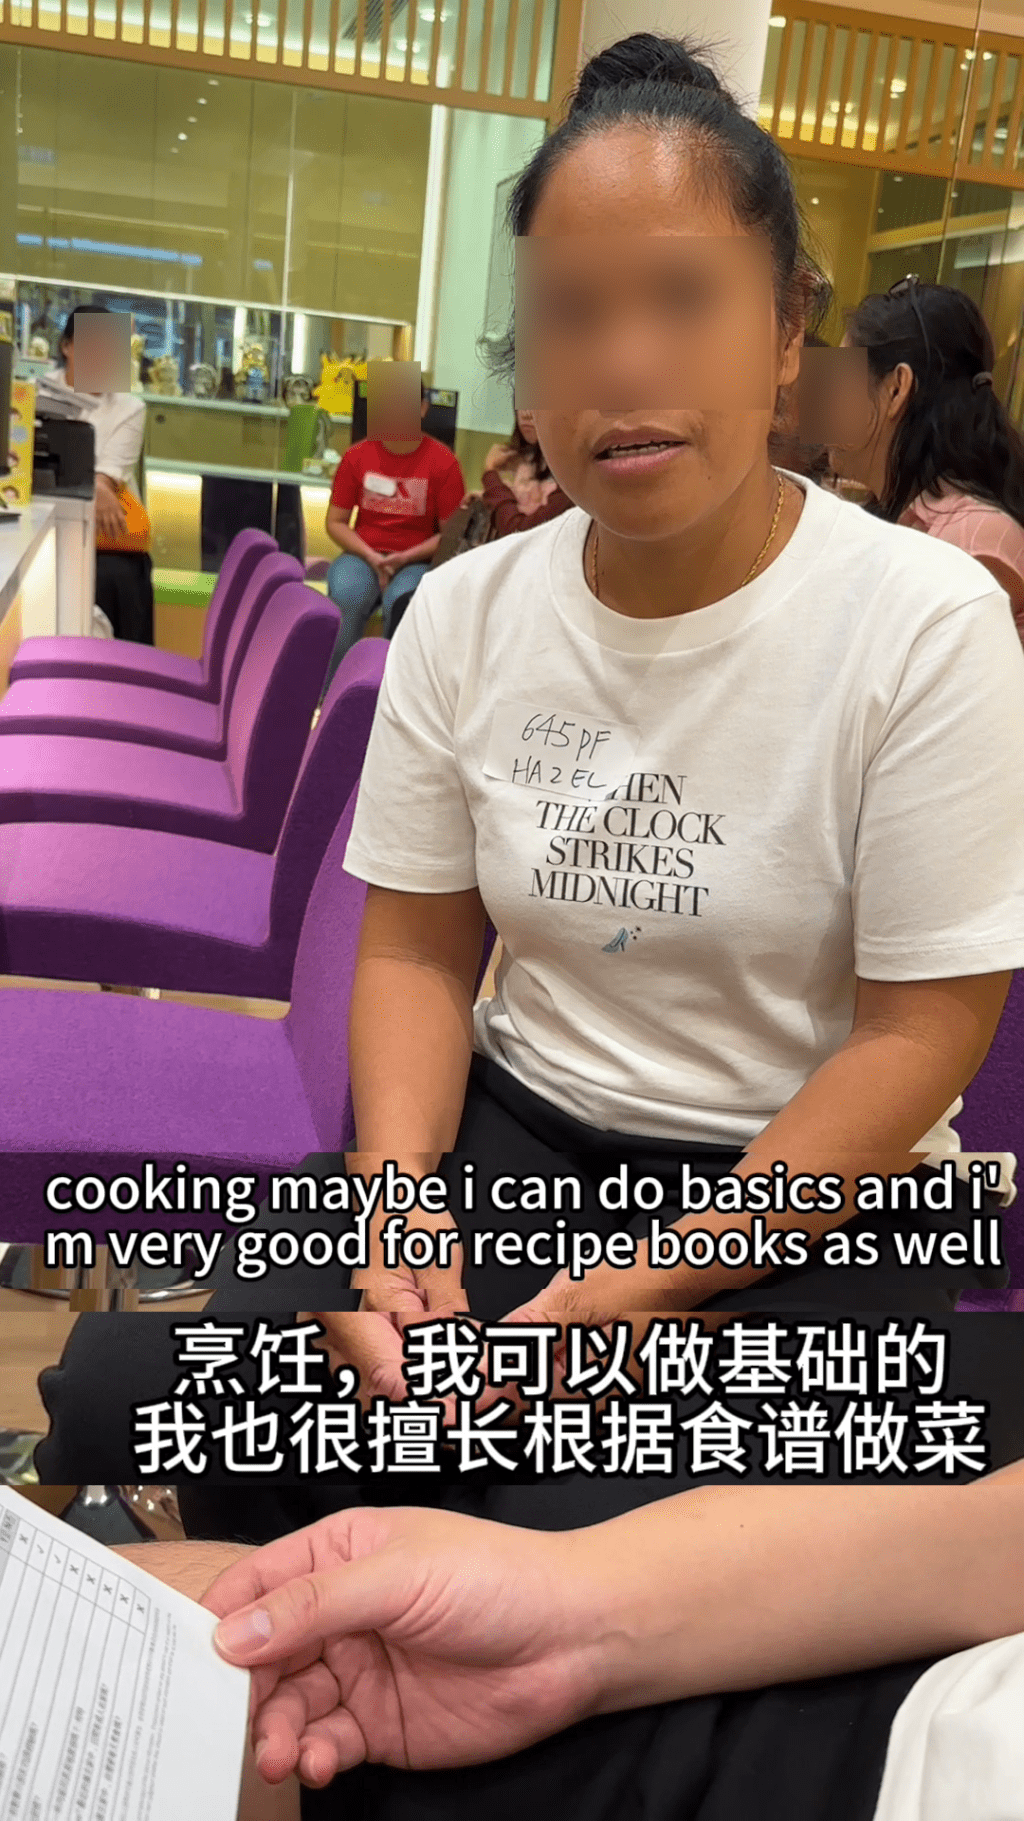 至于煮饭问题，她表示可做基本菜式，亦擅长跟食谱煮饭。